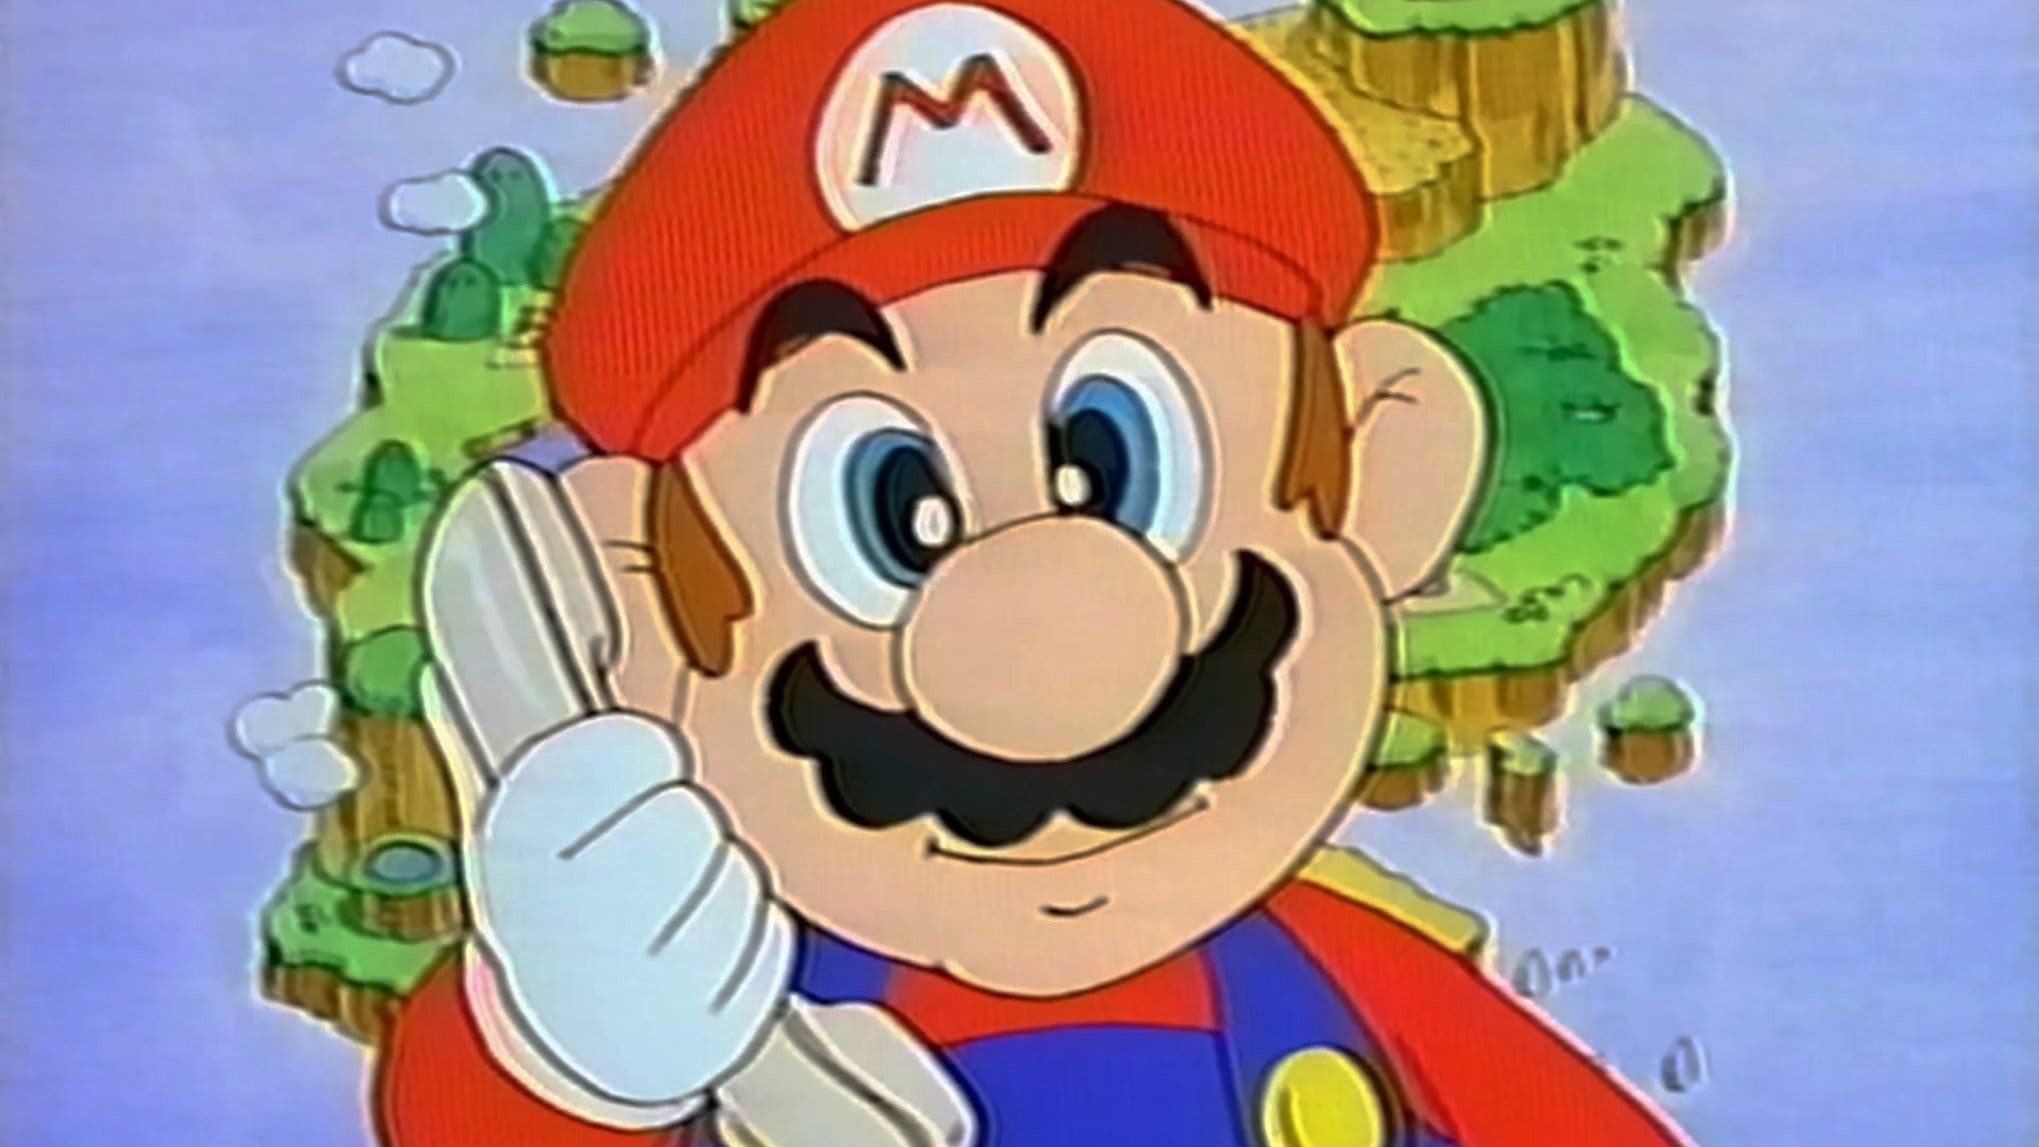 Descubre qué ocurre cuando llamas a Super Mario por teléfono